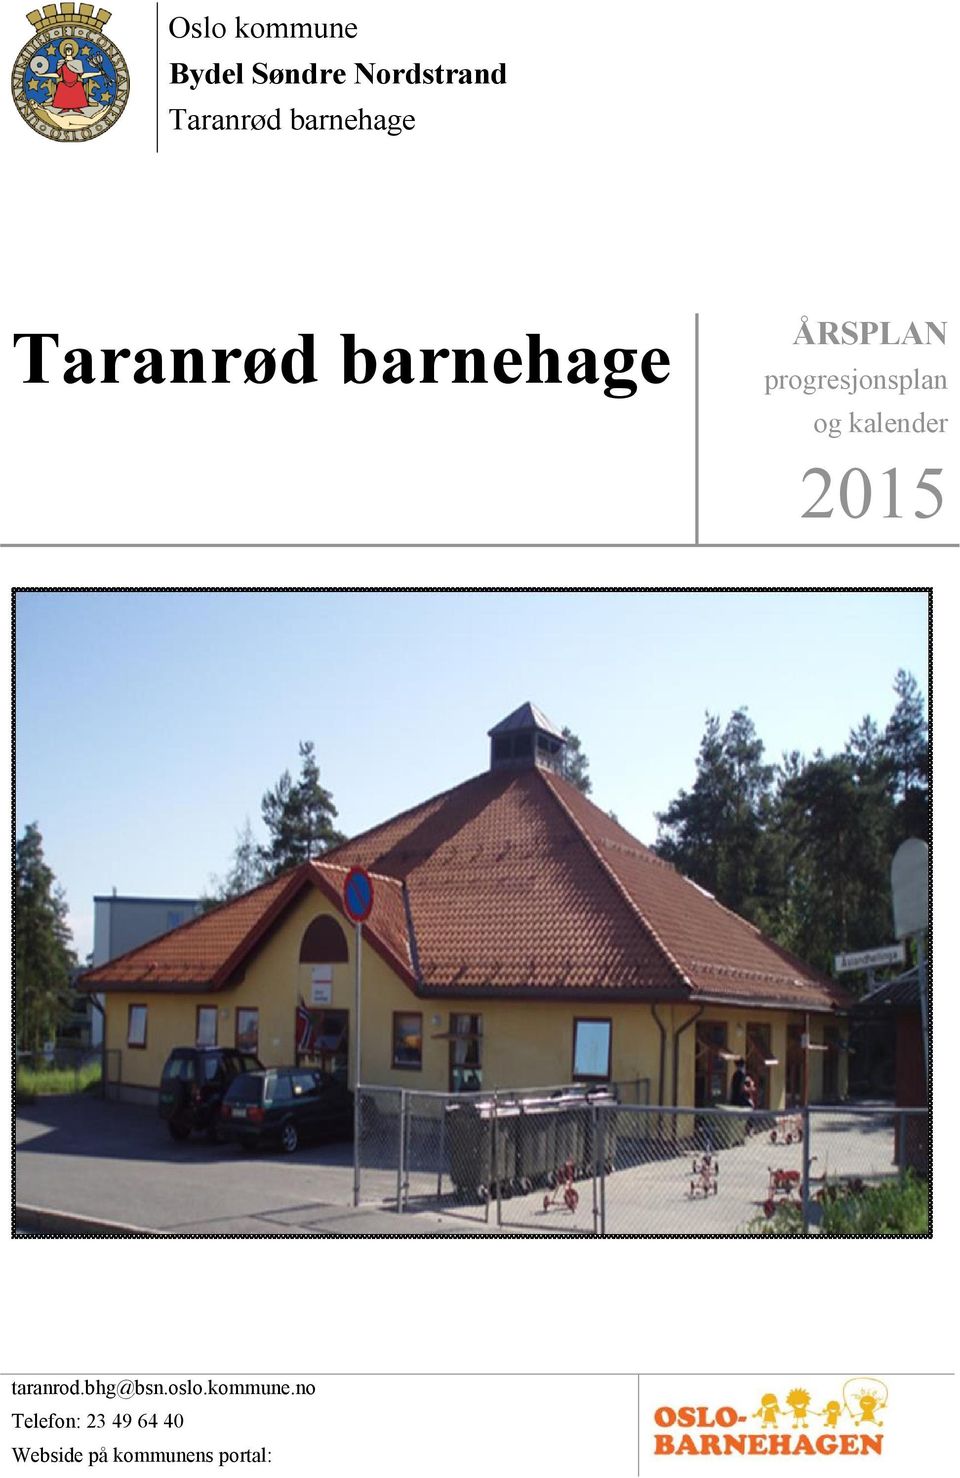 ÅRSPLAN. Oslo kommune Bydel Søndre Nordstrand Taranrød barnehage.  progresjonsplan og kalender - PDF Free Download